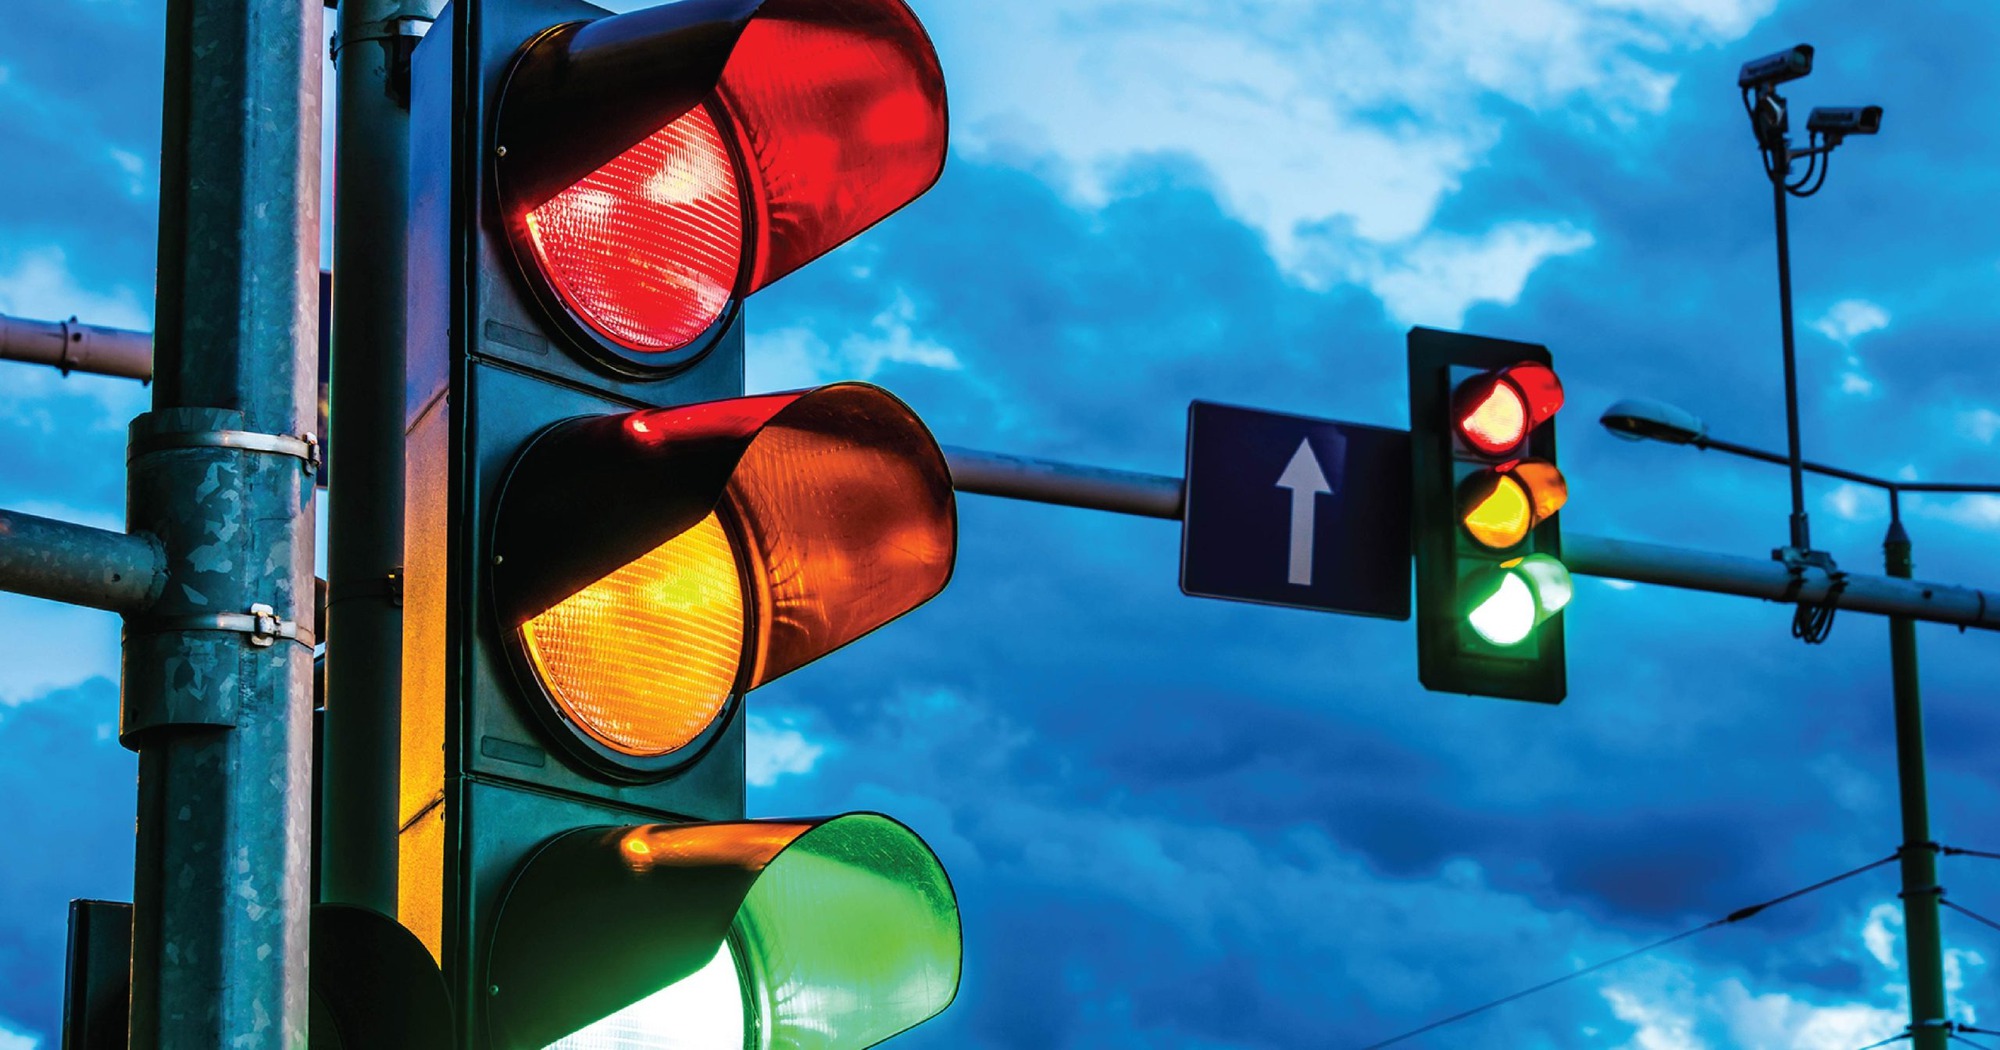 Ngoài đèn xanh, đèn đỏ, đèn vàng cần có thêm đèn tín hiệu giao thông thứ tư?